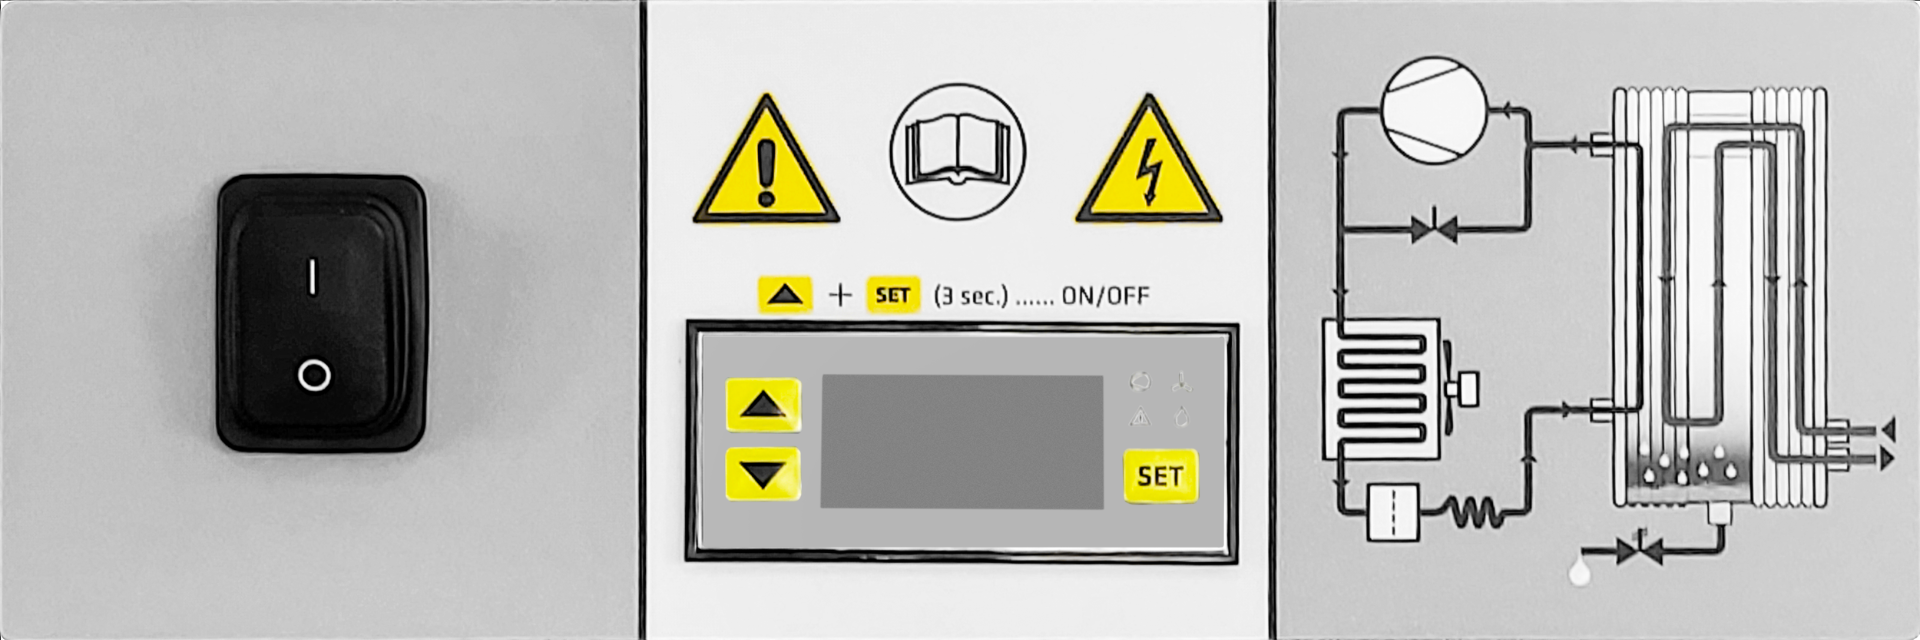 Tableau de bord avec communication Modbus du sécheur frigorifique RDO